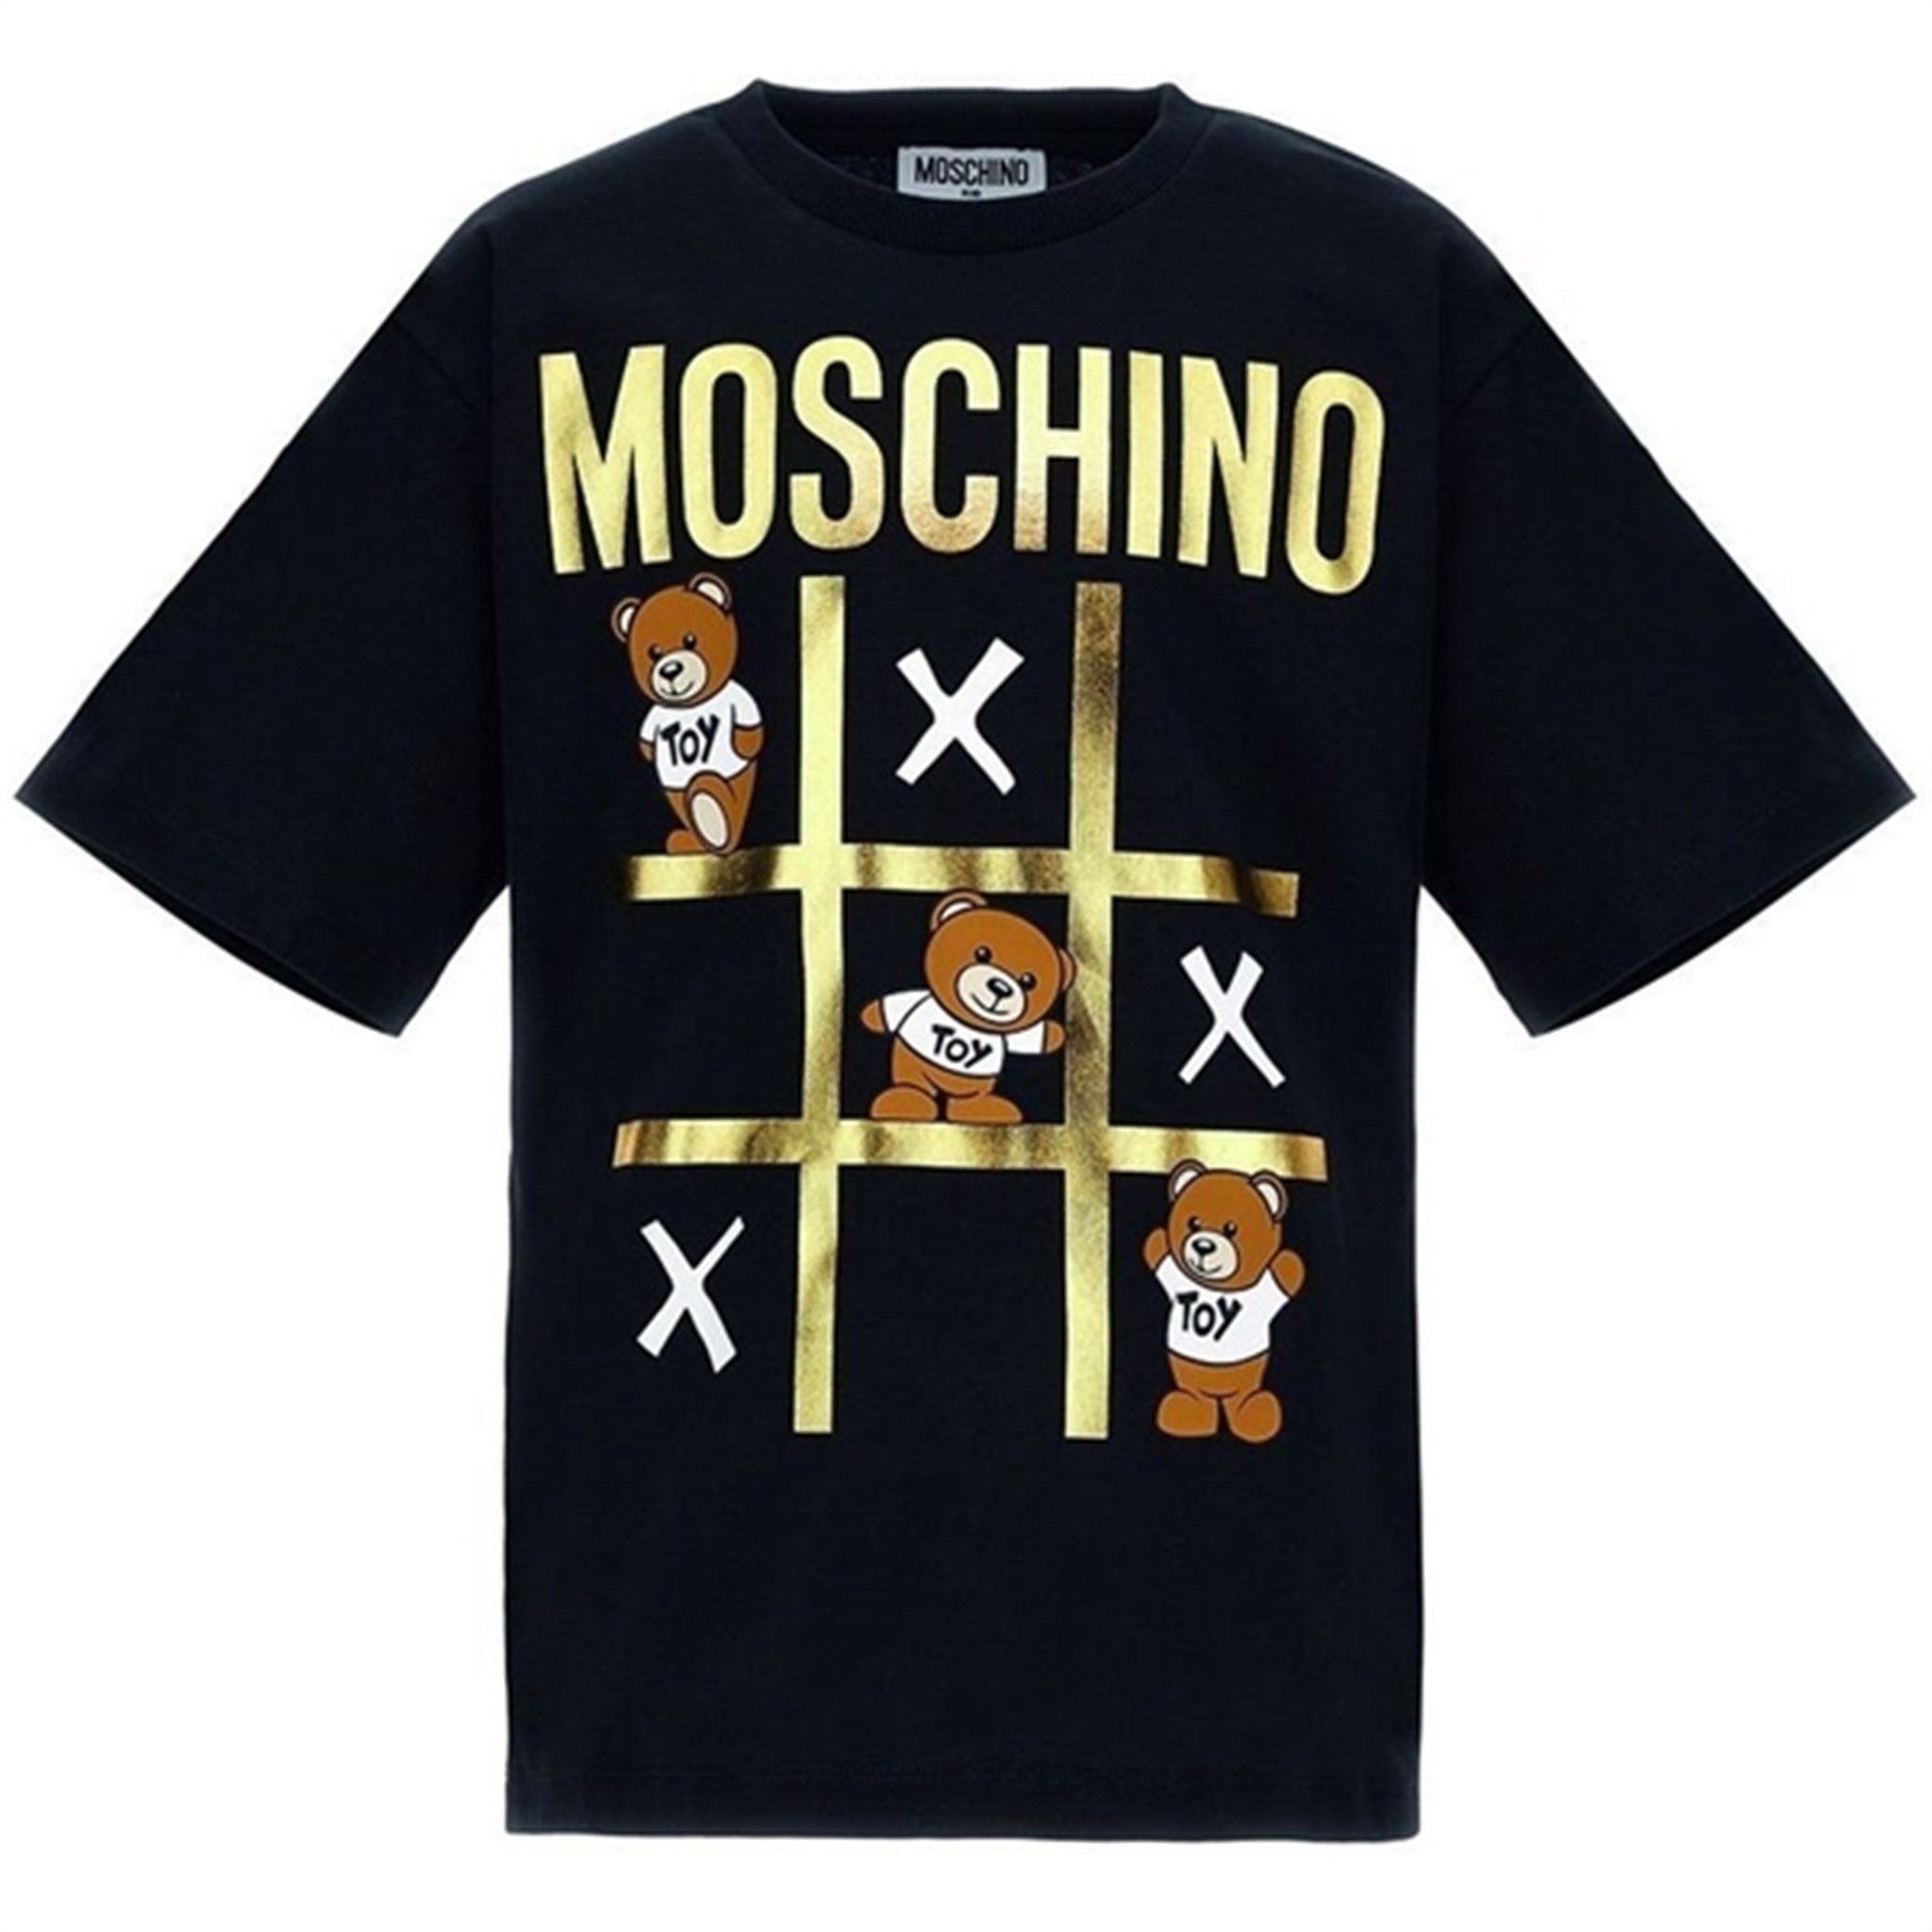 Moschino Black T-Shirt Maxi